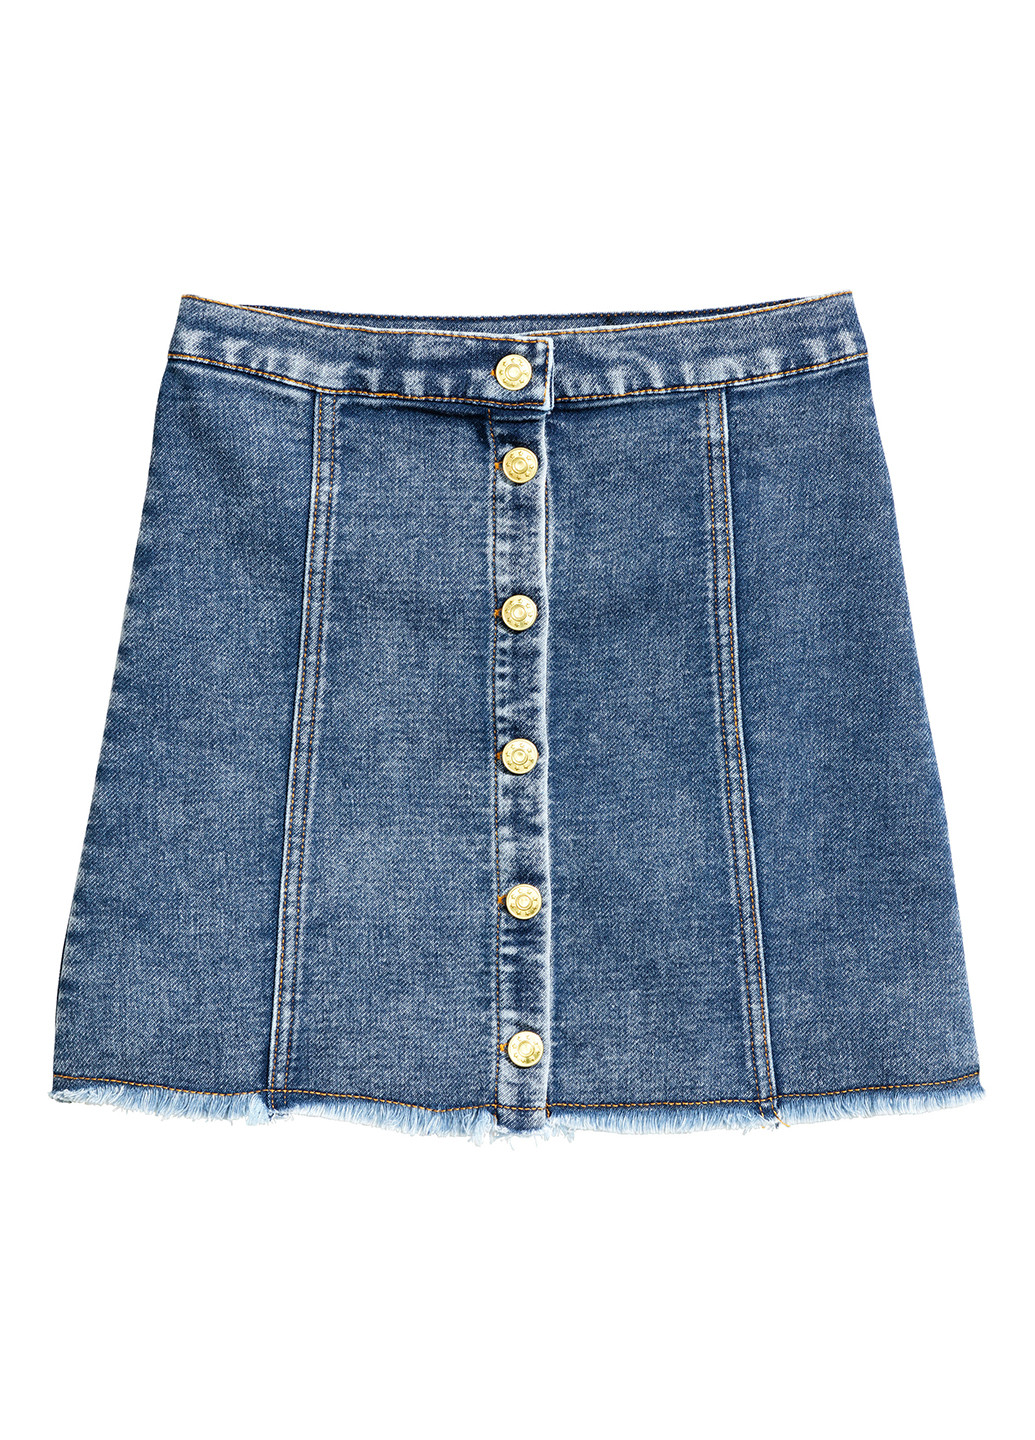 Джинсовая джинсовая однотонная юбка H&M а-силуэта (трапеция)